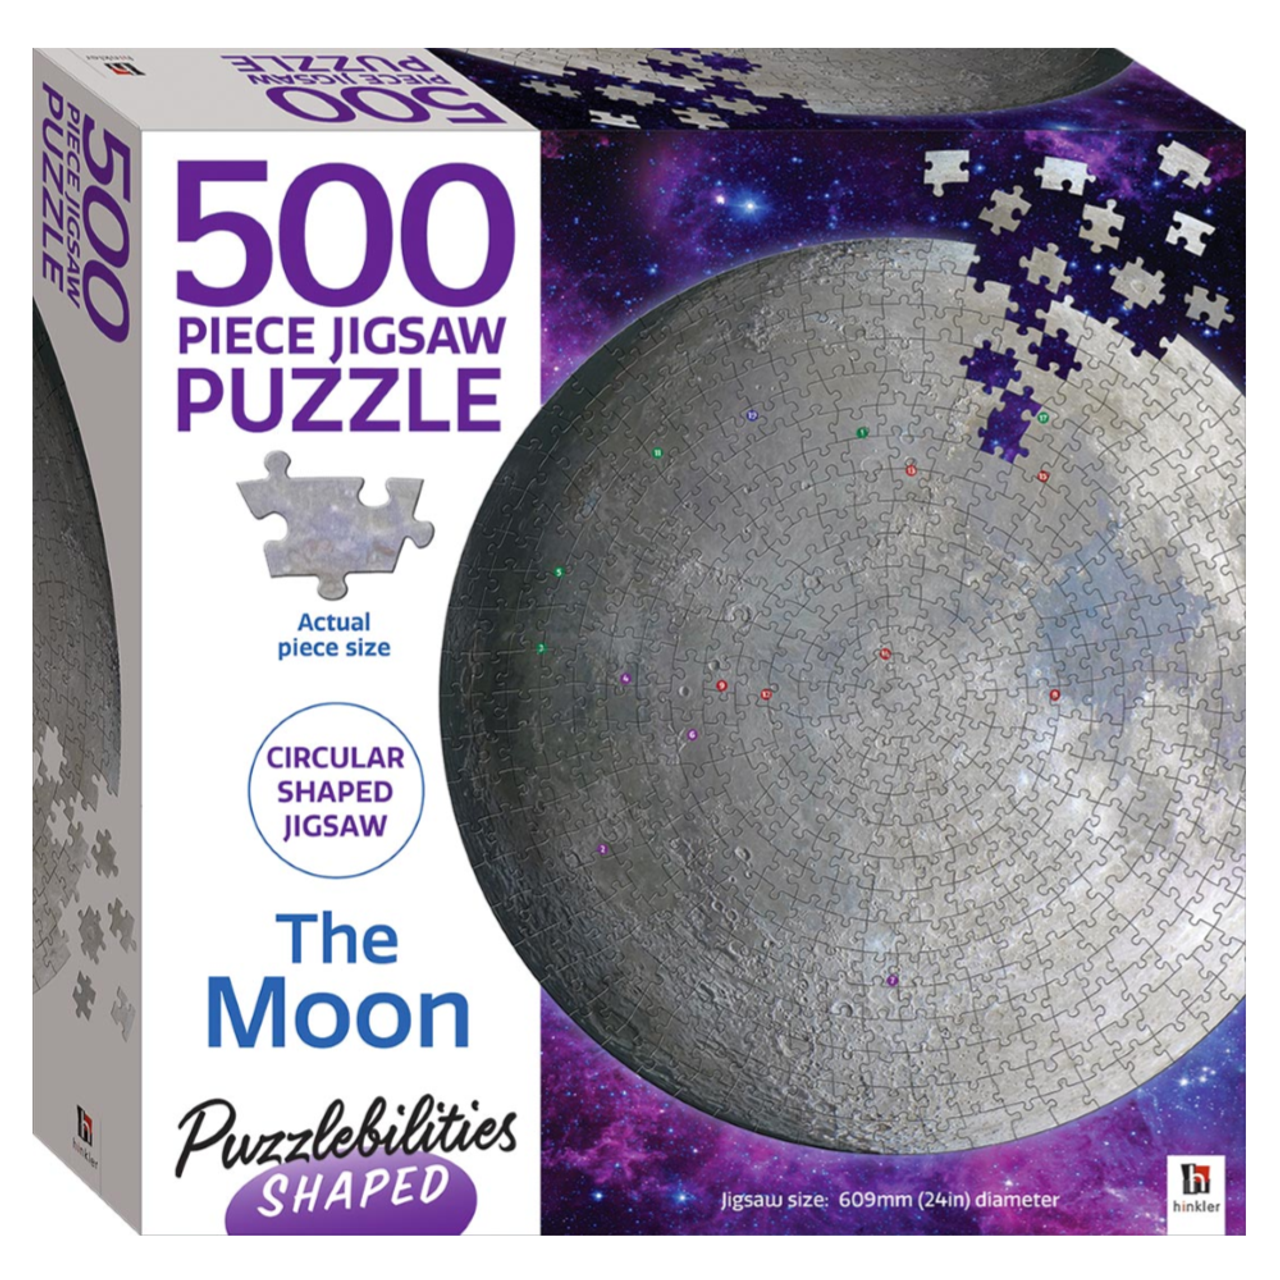 Puzzle éducatif 500 pièces - Egypte - Maison Moon